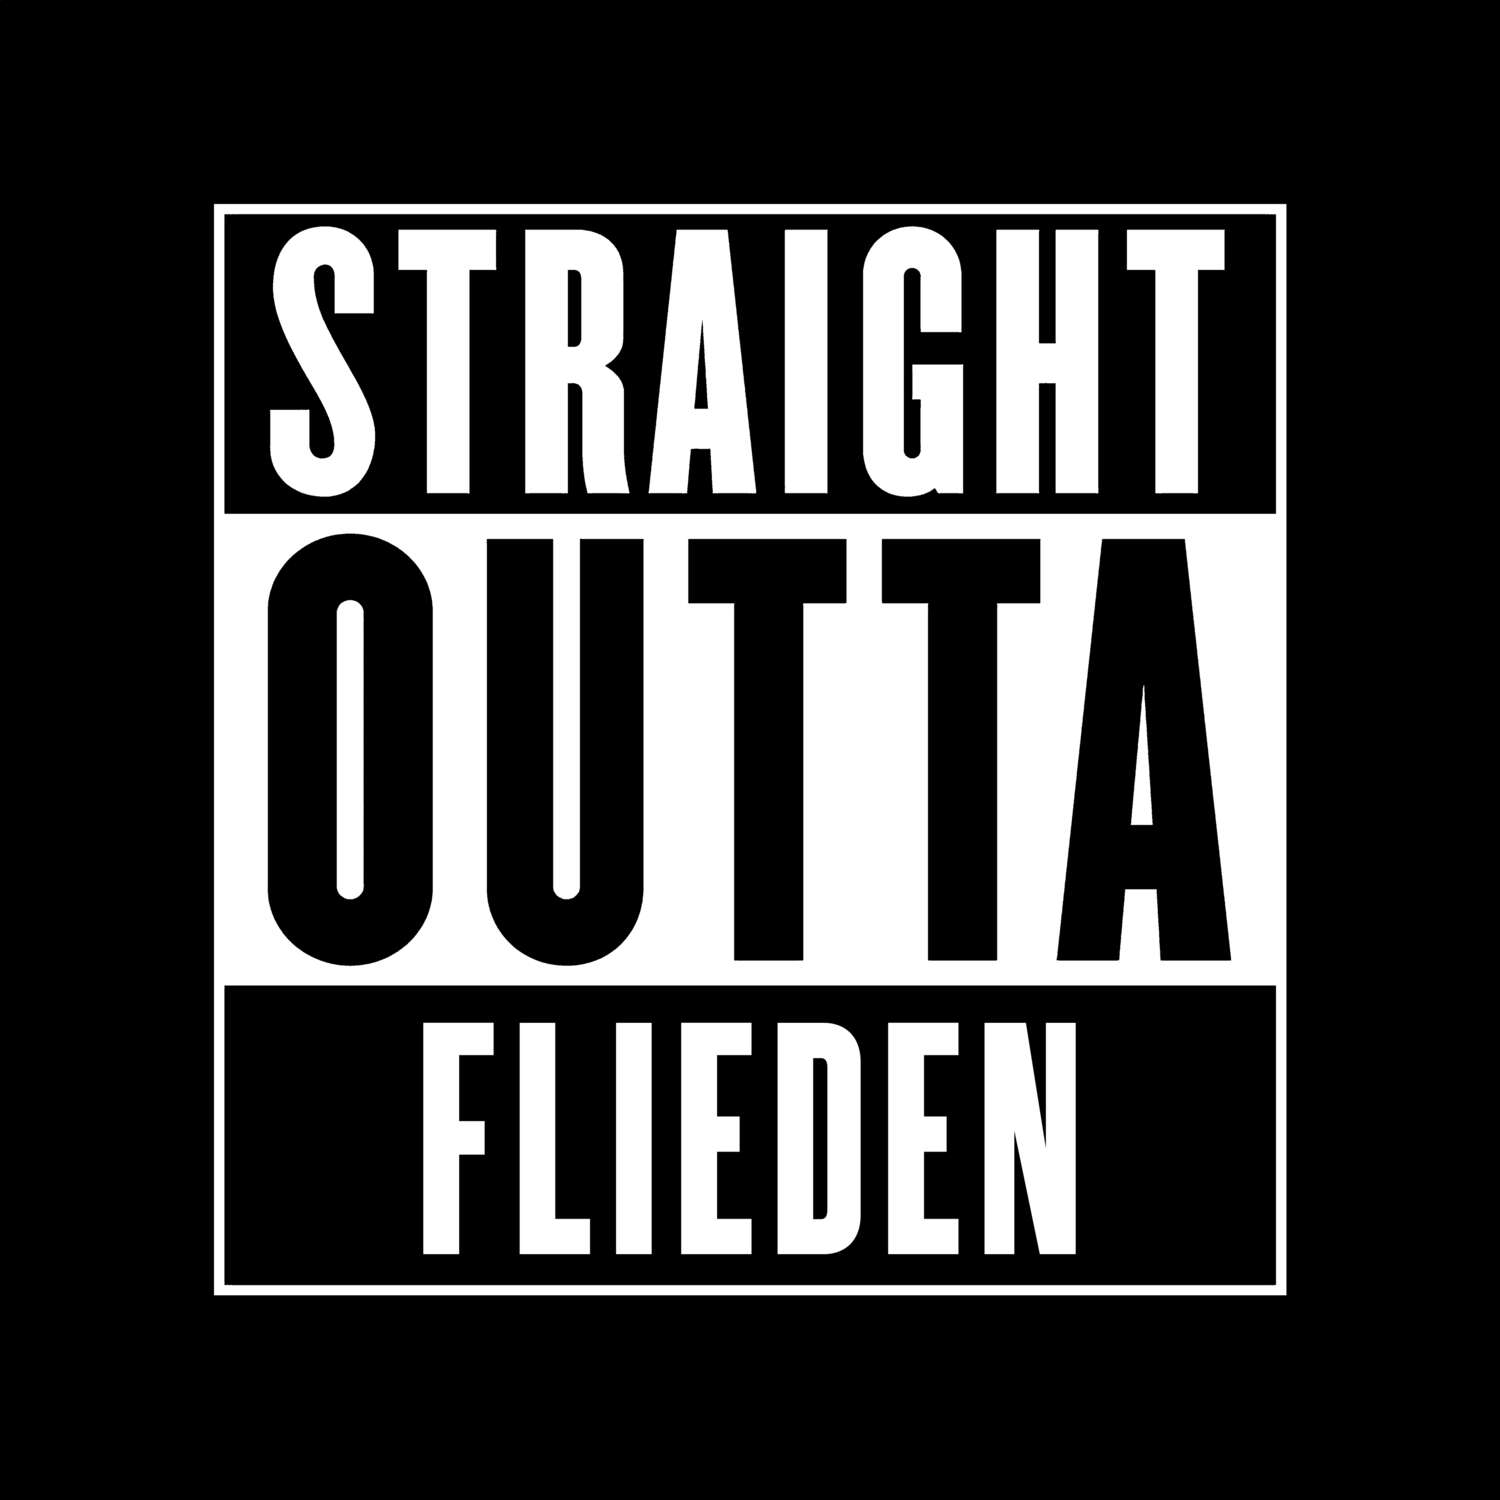 Flieden T-Shirt »Straight Outta«